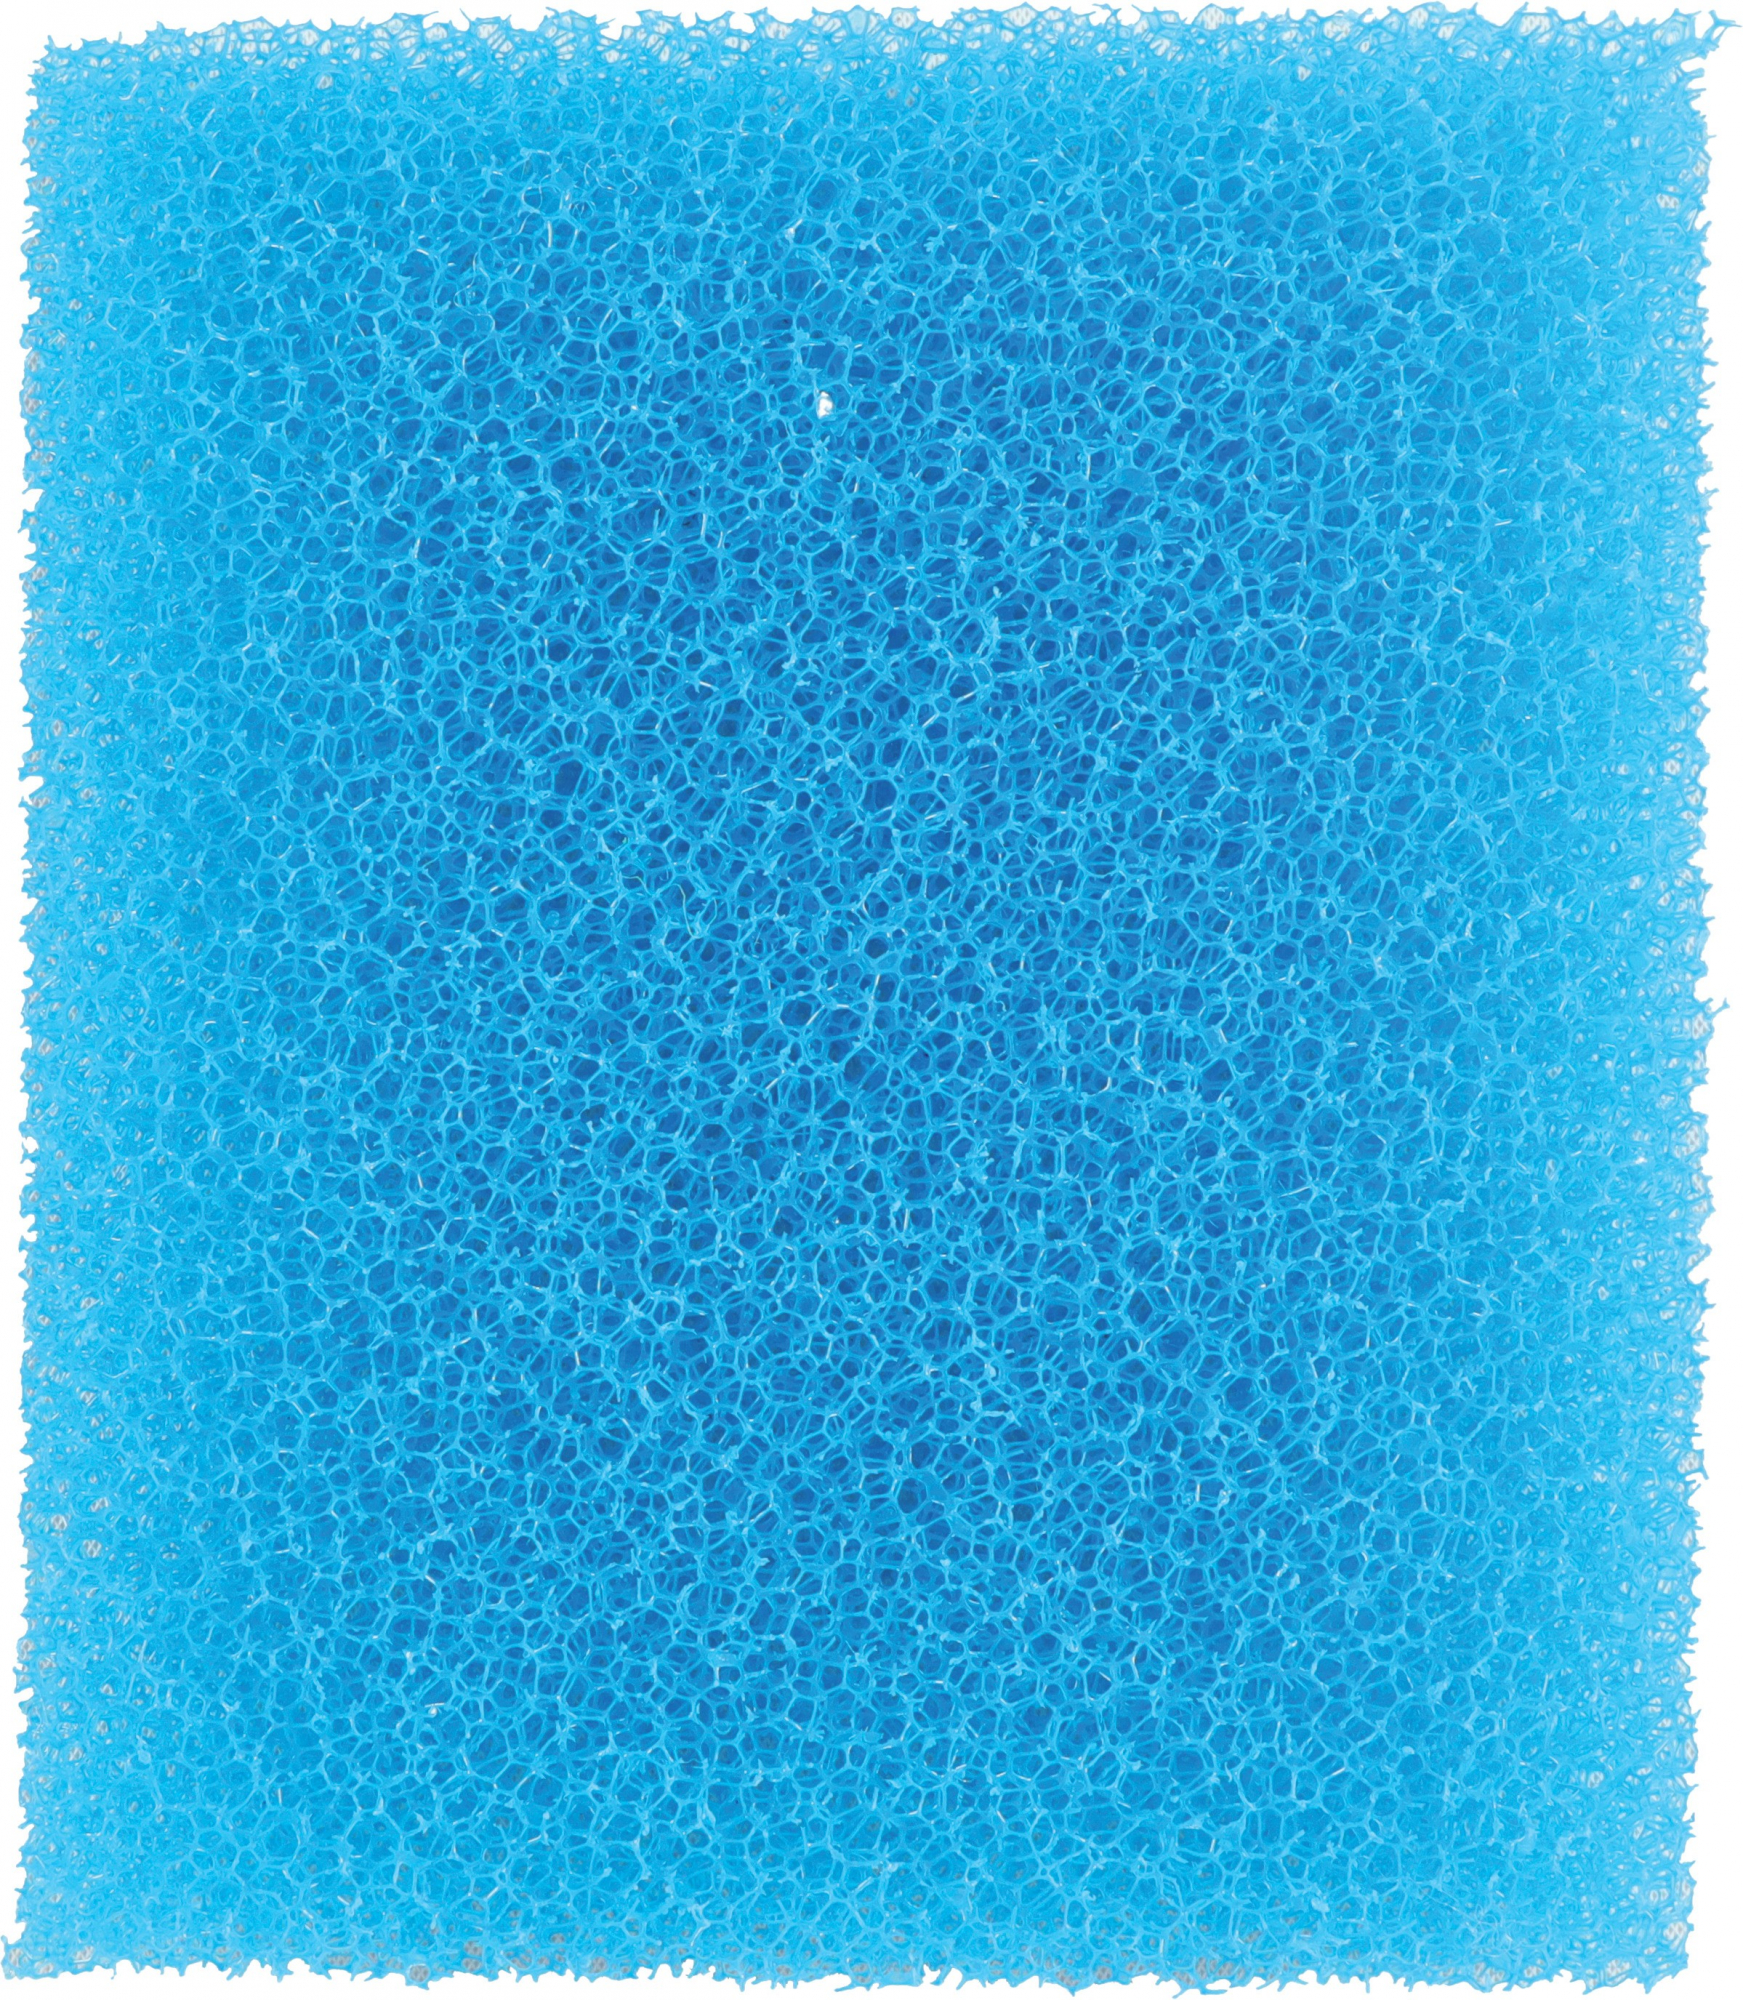 Blauwe spons voor watervalfilter Aquaya